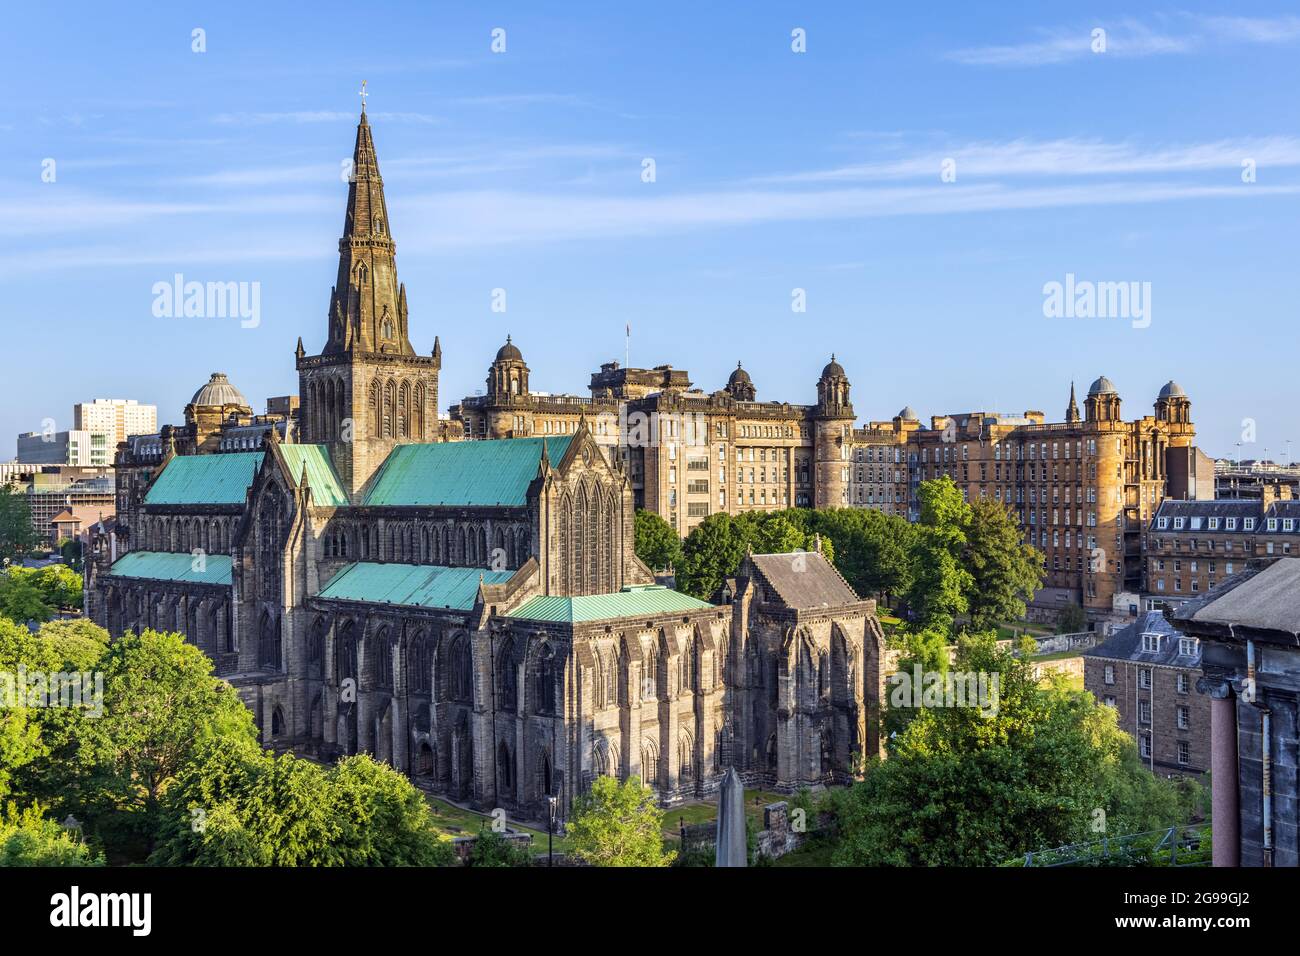 Die Glasgow Cathedral, die älteste Kathedrale auf dem schottischen Festland, und die Old Royal Infirmary, die dem viktorianischen Friedhof von Nacropolis entnommen wurde. Stockfoto